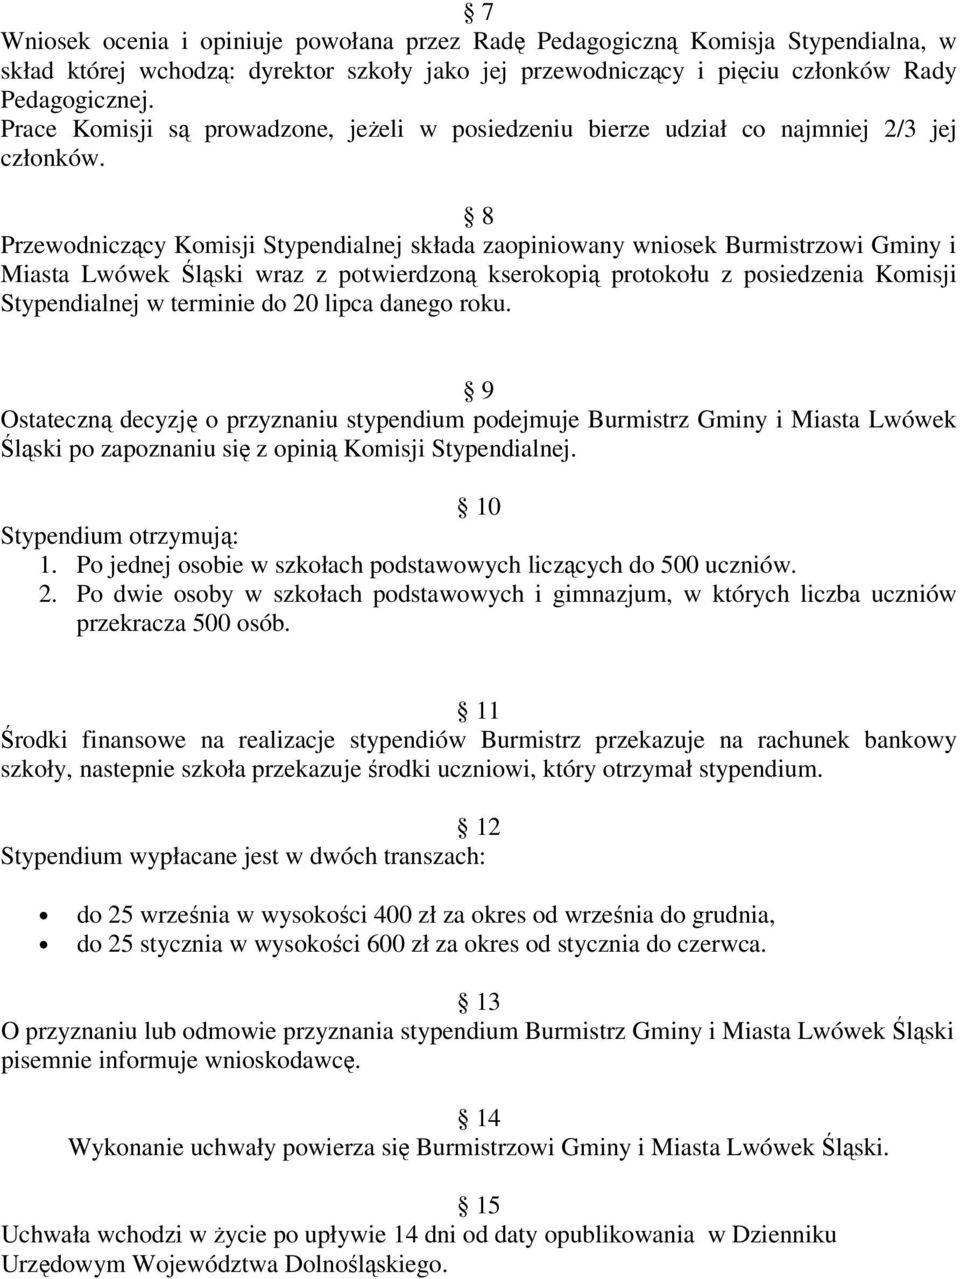 8 Przewodniczący Komisji Stypendialnej składa zaopiniowany wniosek Burmistrzowi Gminy i Miasta Lwówek Śląski wraz z potwierdzoną kserokopią protokołu z posiedzenia Komisji Stypendialnej w terminie do